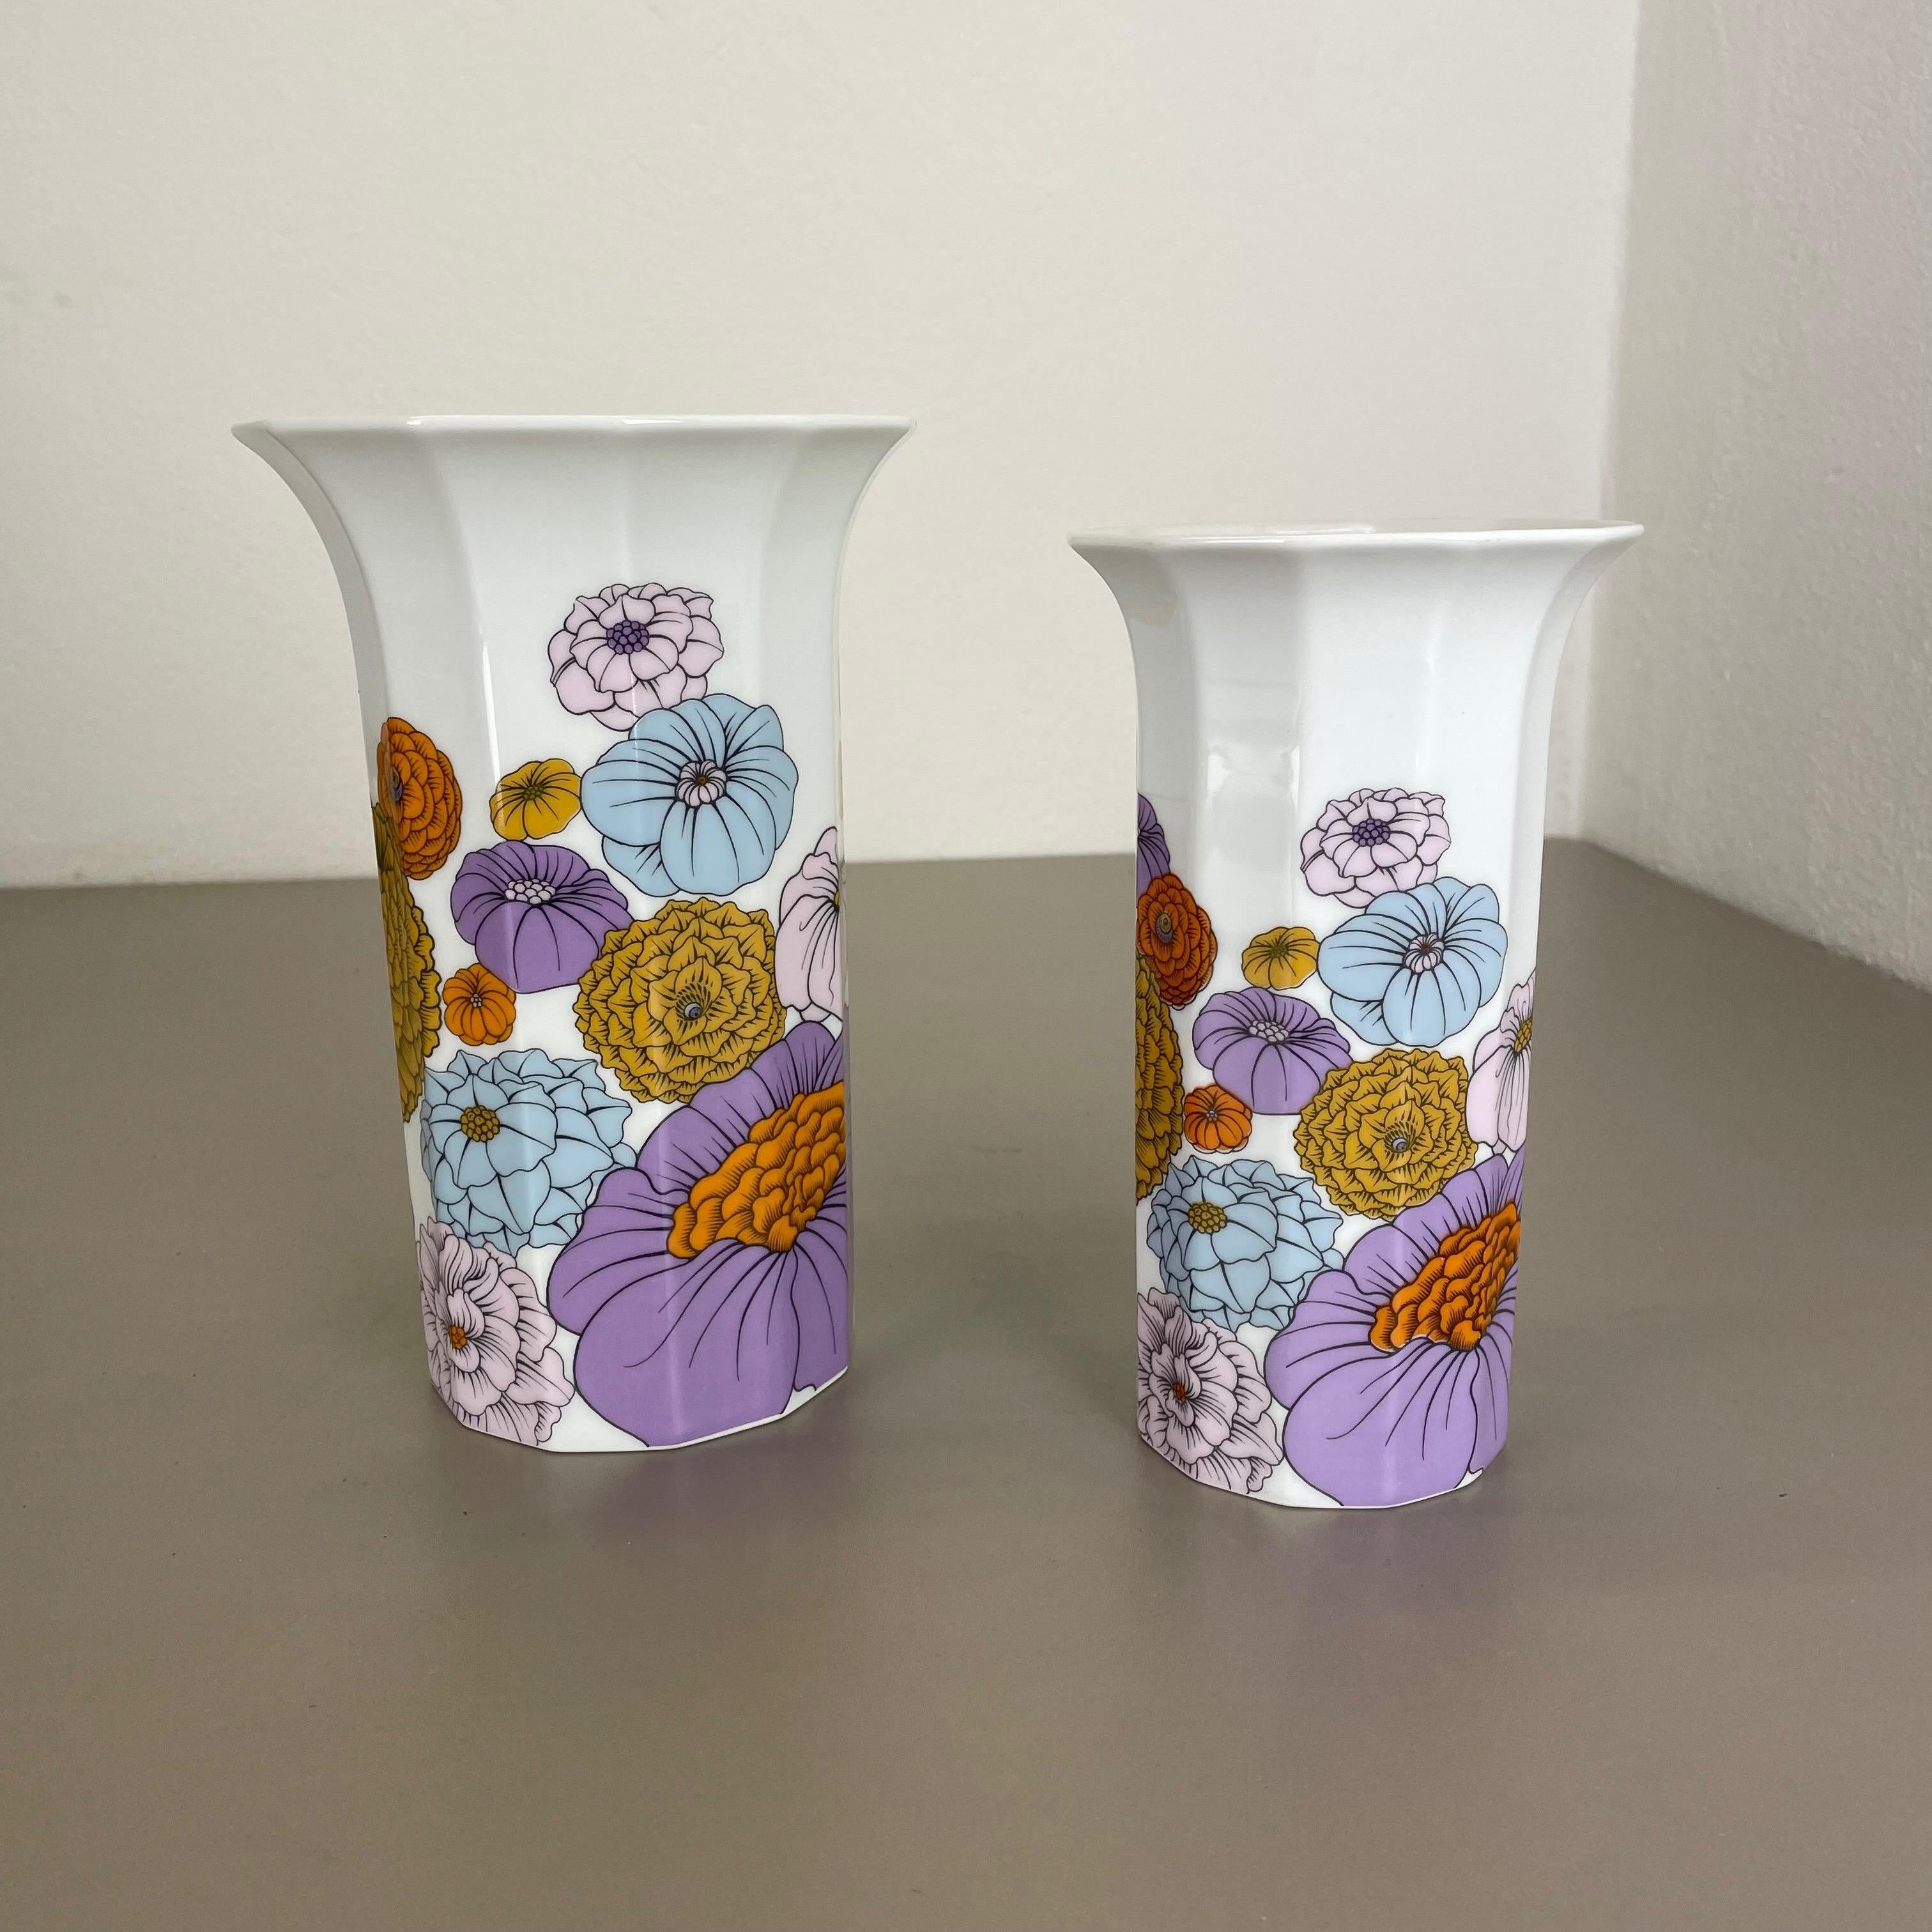 Artikel:

Op Art Porzellanvase 2er-Set


Produzent:

Rosenthal, Deutschland


Designer:

Tapio Wirkkala



Jahrzehnt:

1980s





Dieses originelle Vasen-Set im Op-Art-Stil wurde in den 1980er Jahren in Deutschland von Rosenthal hergestellt. Sie ist